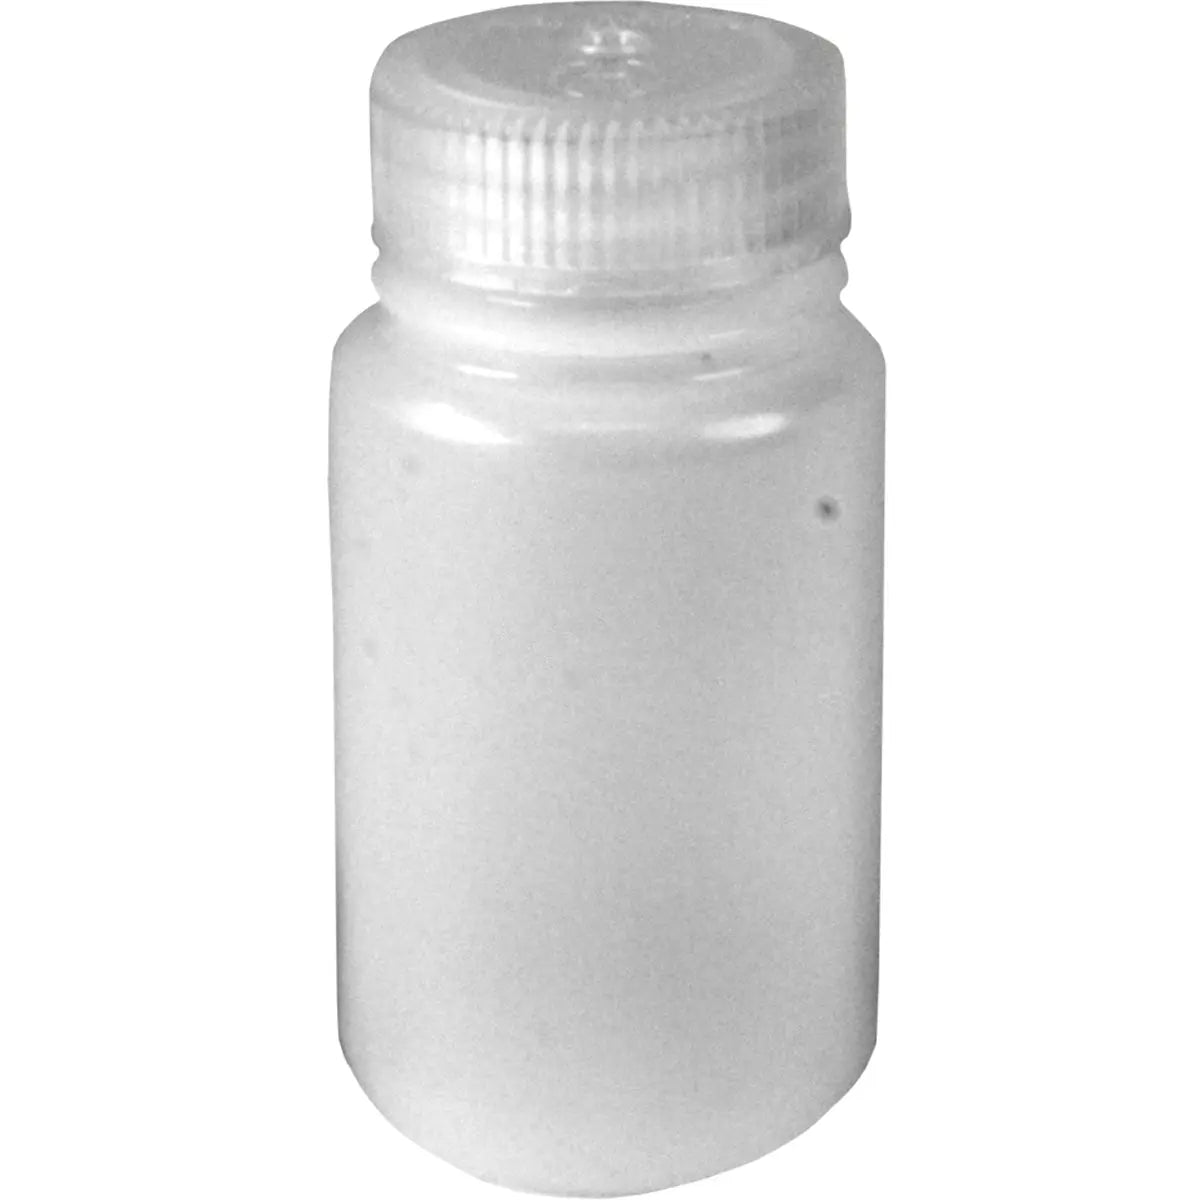 Nalgene HDPE Plastic Wide Mouth Storage Bottle - Clear Nalgene